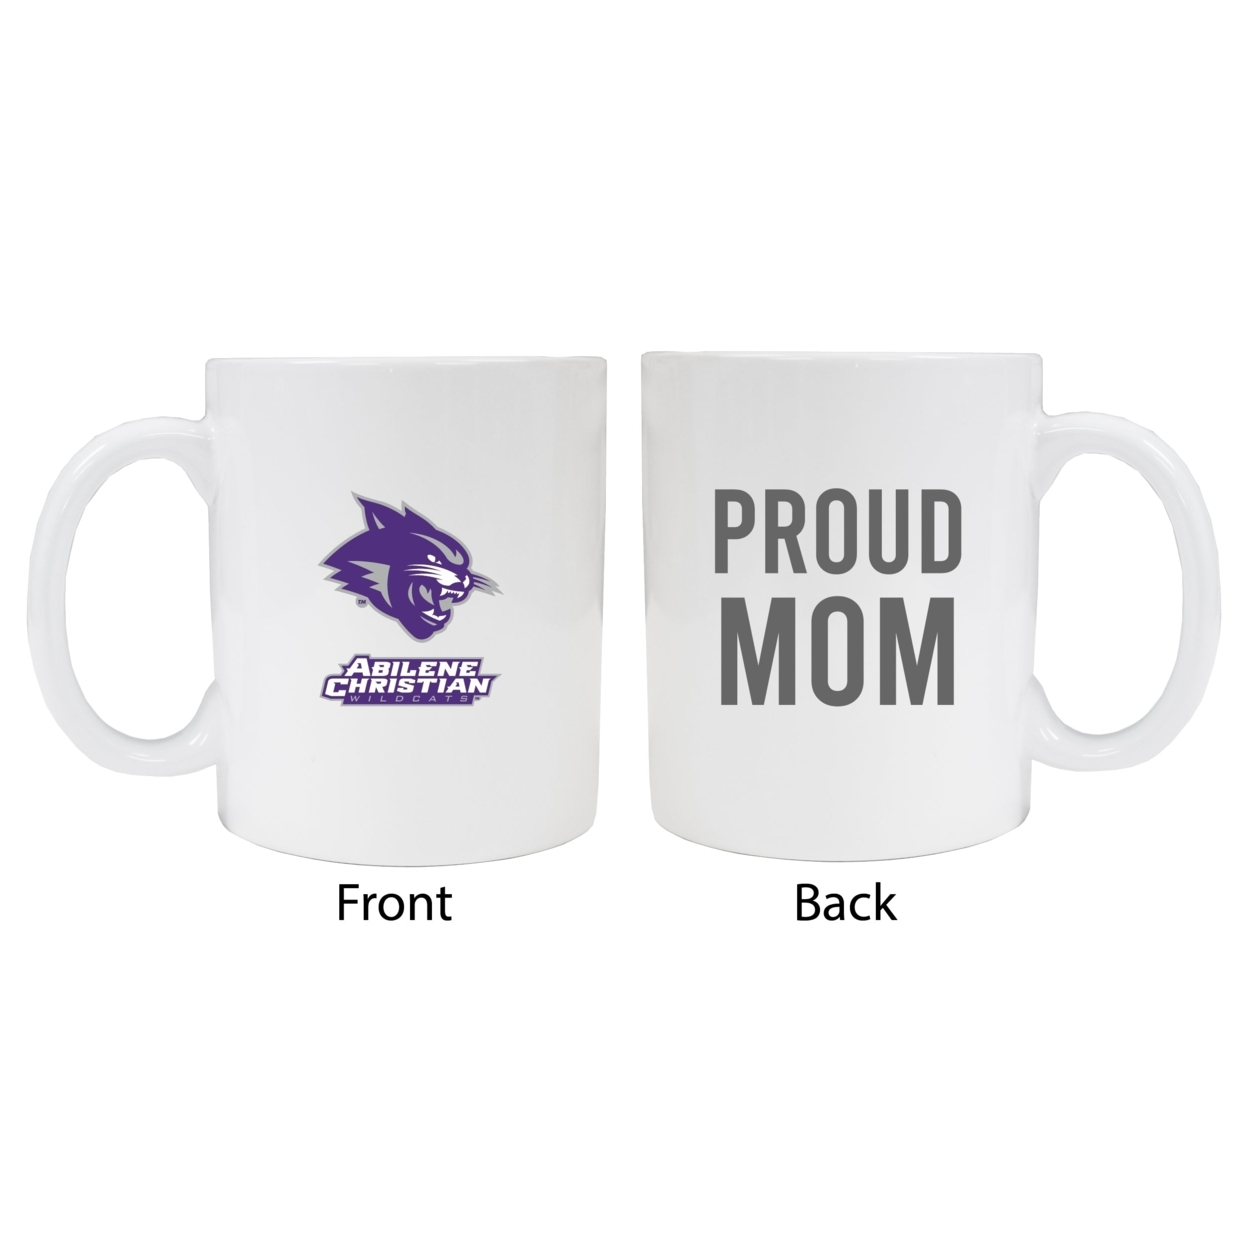 Abilene Christian University Proud Mom Ceramic Coffee Mug - White (2 Pack)